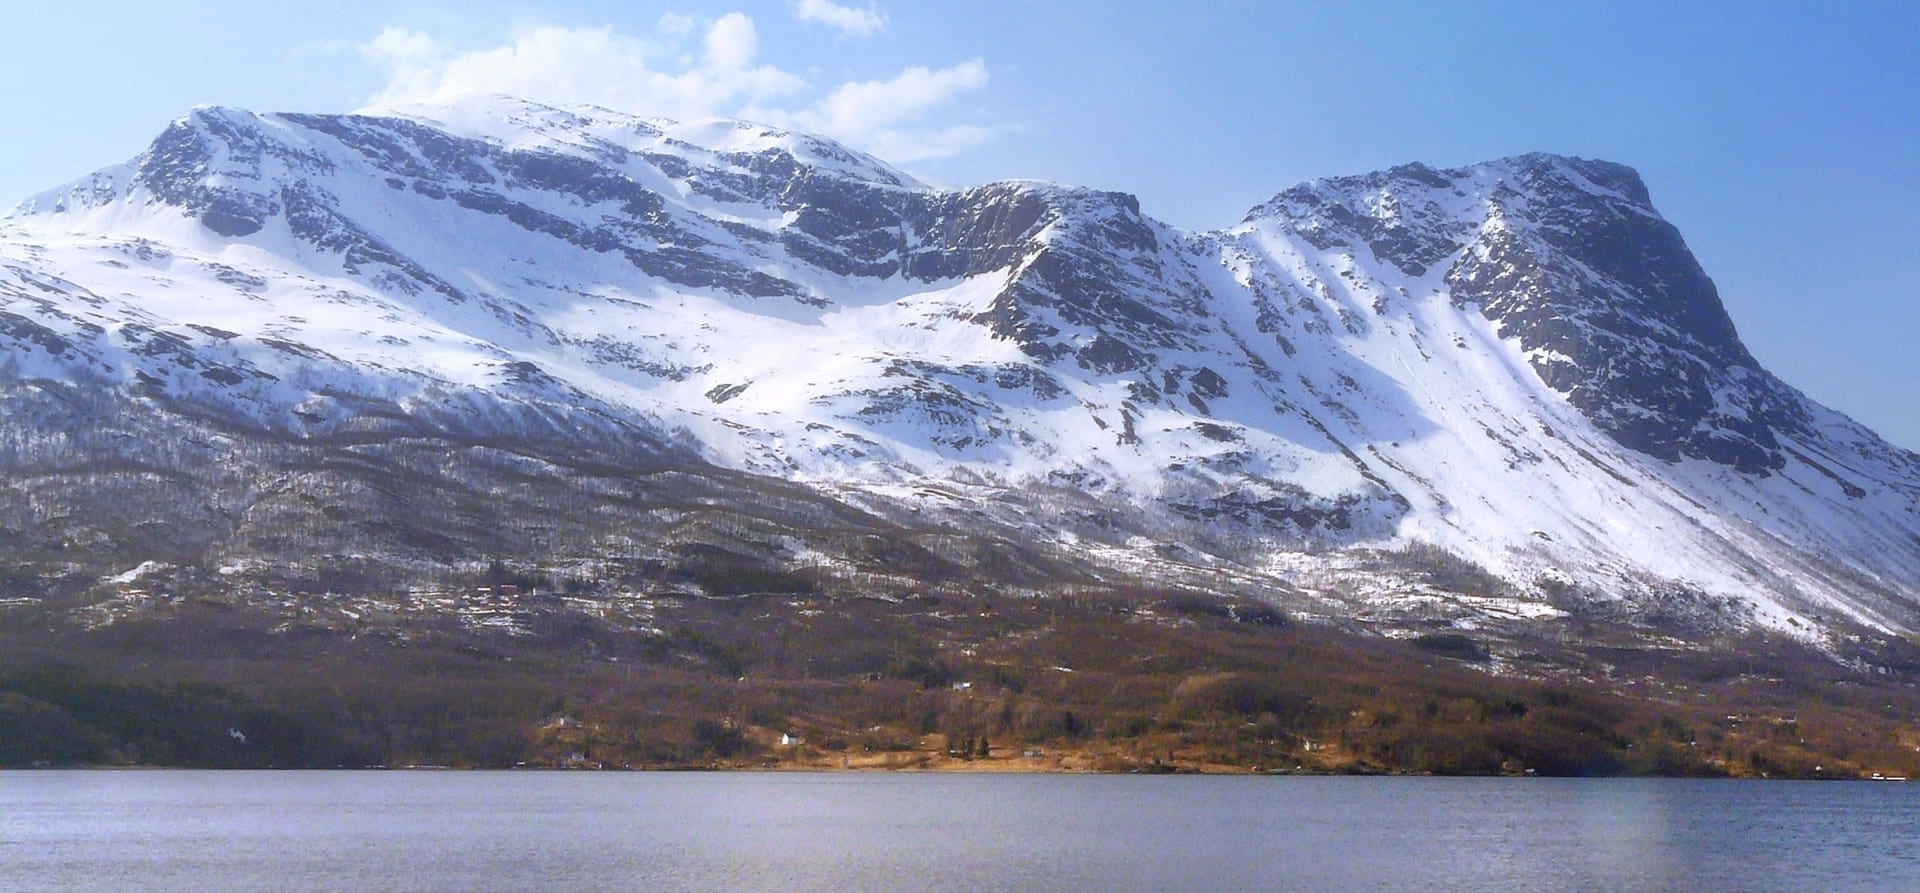 Narvik está rodeada de montañas cubiertas de nieve, como la cercana montaña de Rombaken, que se muestra aquí, y que es ideal para el esquí y el senderismo. Narvik Noruega